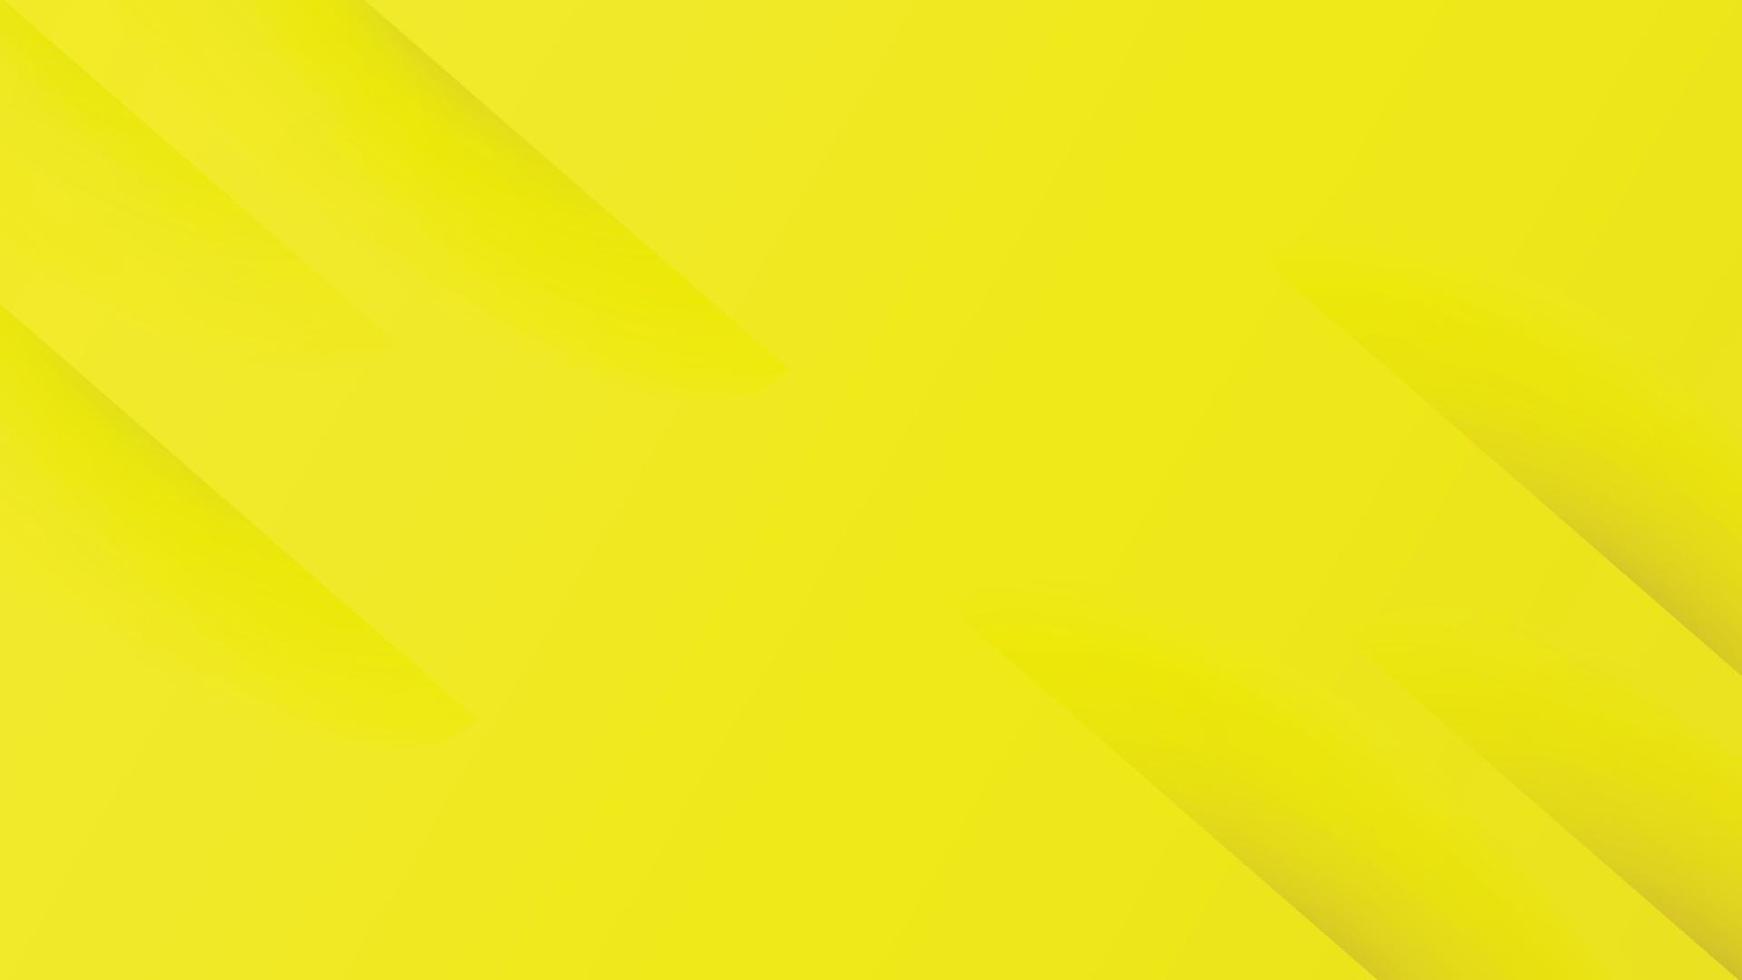 abstrakter gelber Hintergrund mit Farbverlauf mit diagonalen Streifen. kann für Titelbroschürenvorlage, Poster, Bannerweb, Printanzeige usw. verwendet werden. Vektorillustration vektor